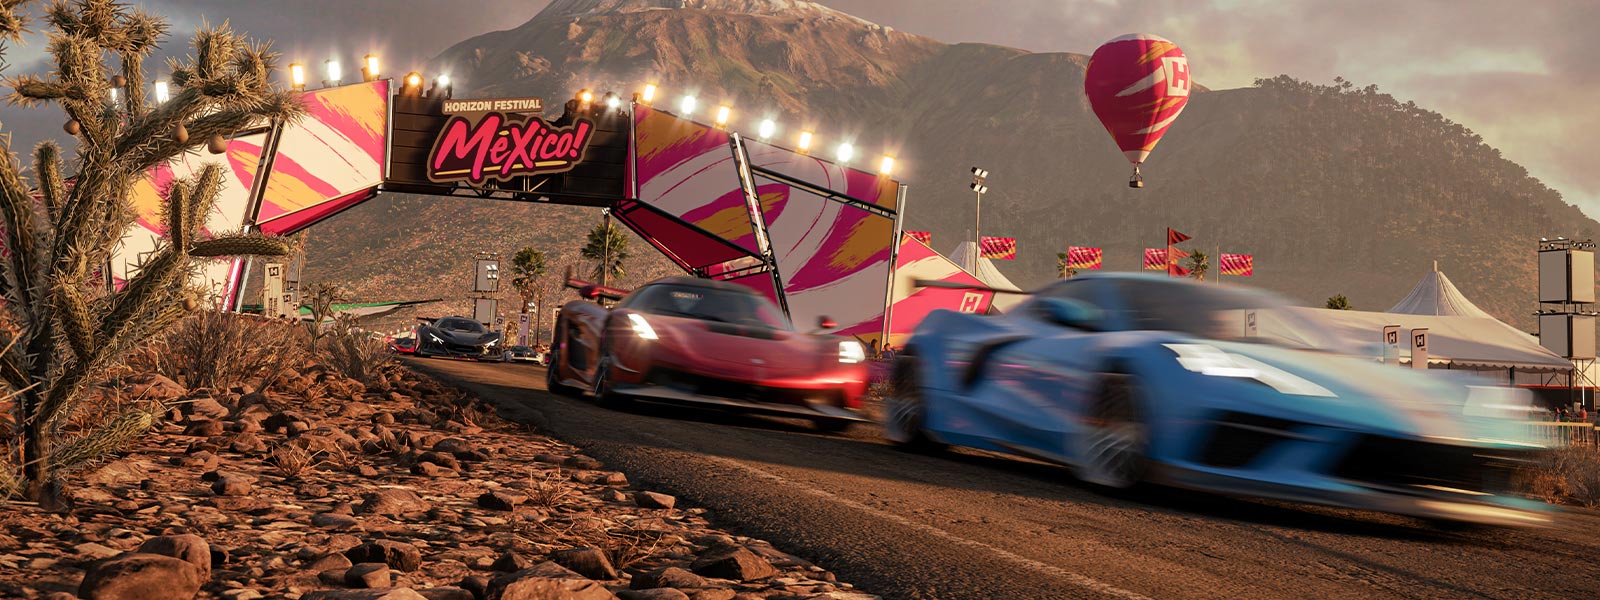 Three cars racing on the Mexico Forza Horizon 5 track